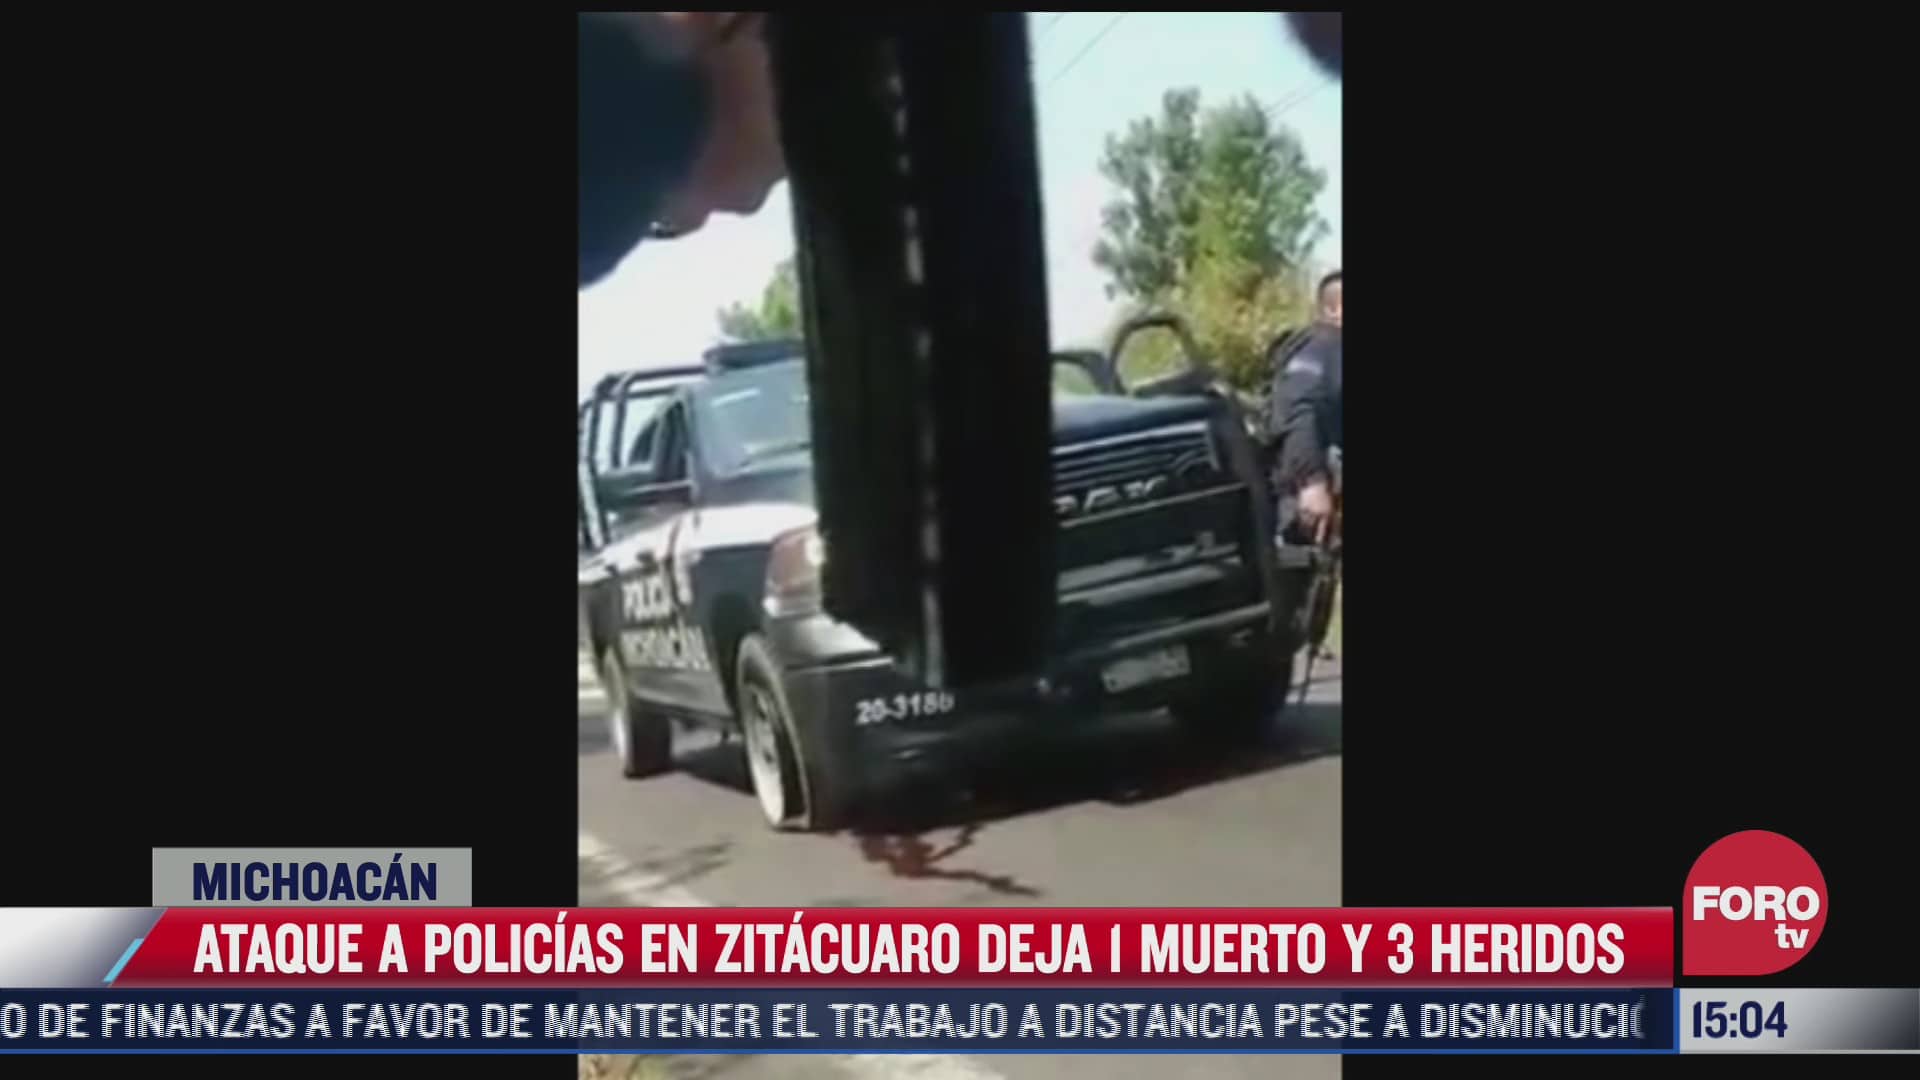 ataque a policias en zitacuaro deja 1 muerto y 3 heridos